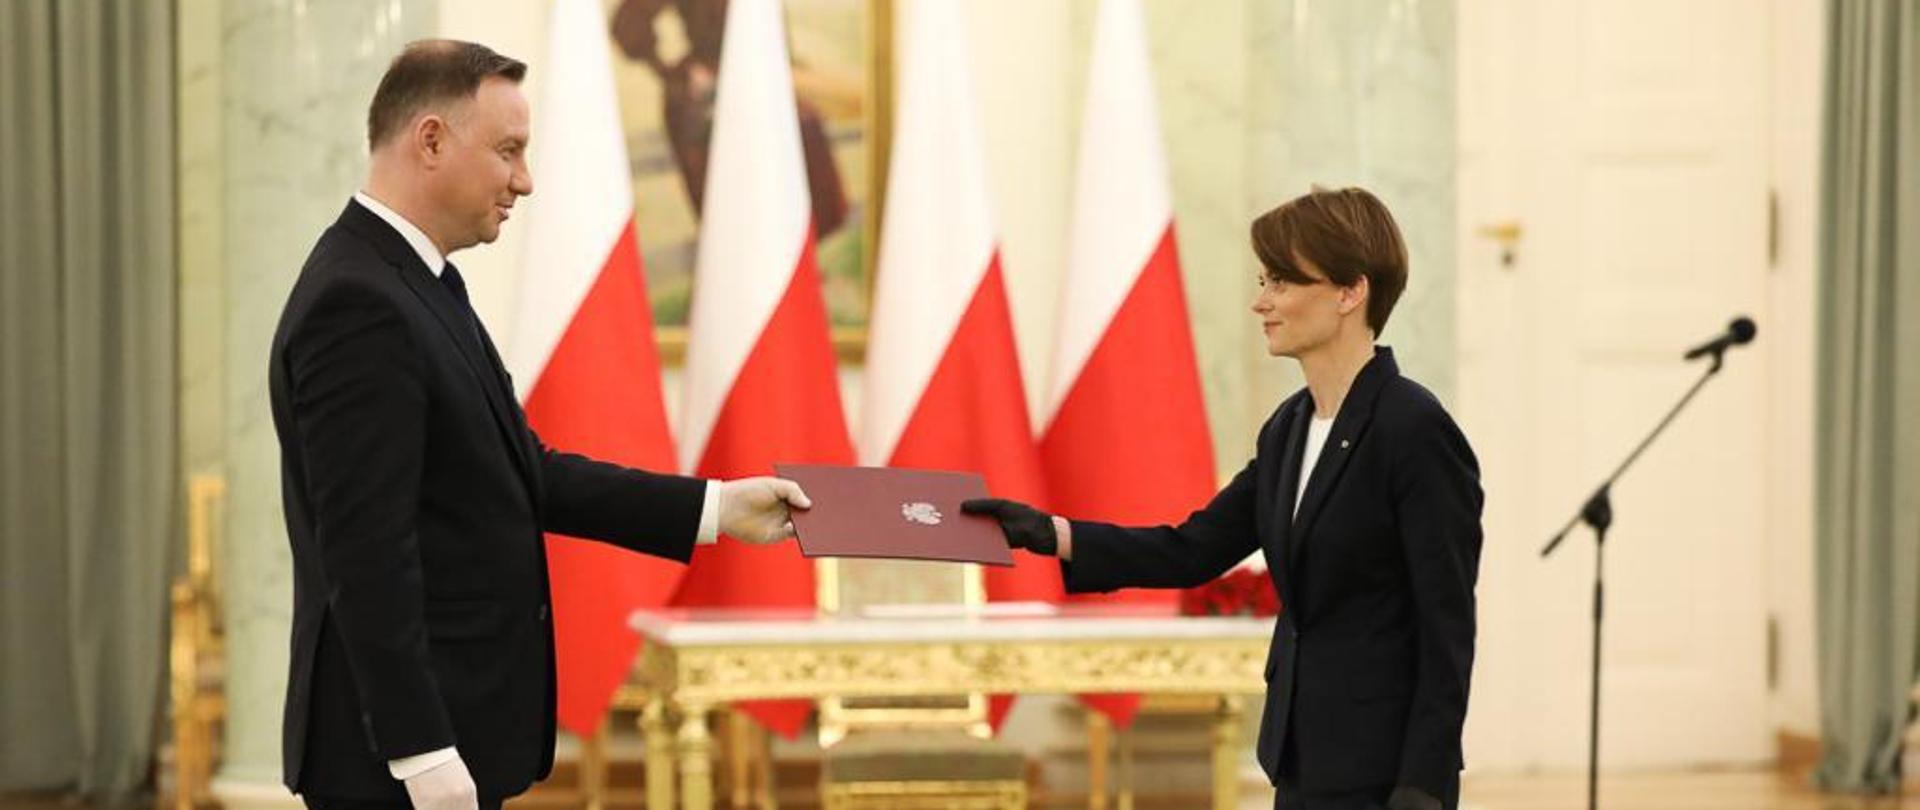 Prezydent Andrzej Duda wręcza minister Jadwidze Emilewicz teczkę. W tle elegancki stół, krzesło oraz polskie flagi.